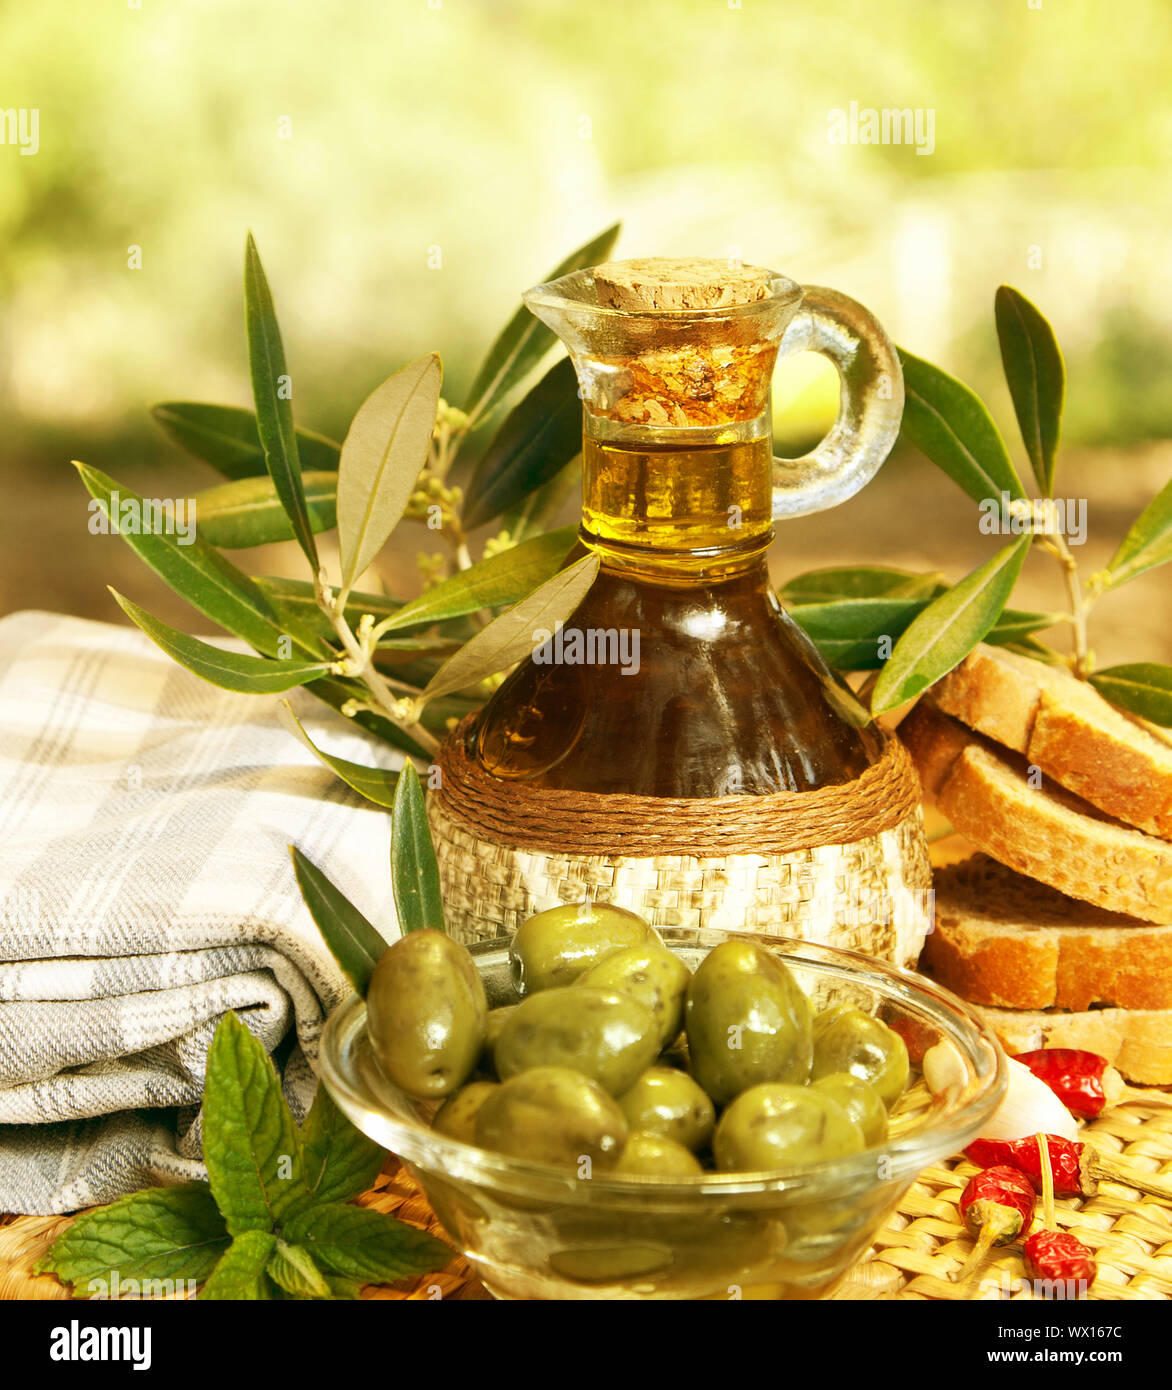 L'huile d'olive dans la bouteille et olives vertes fraîches dans la plaque de verre sur la table, une saine nutrition organique, une cuisine traditionnelle libanaise, fruits mûrs, de l'alimentation sti Banque D'Images